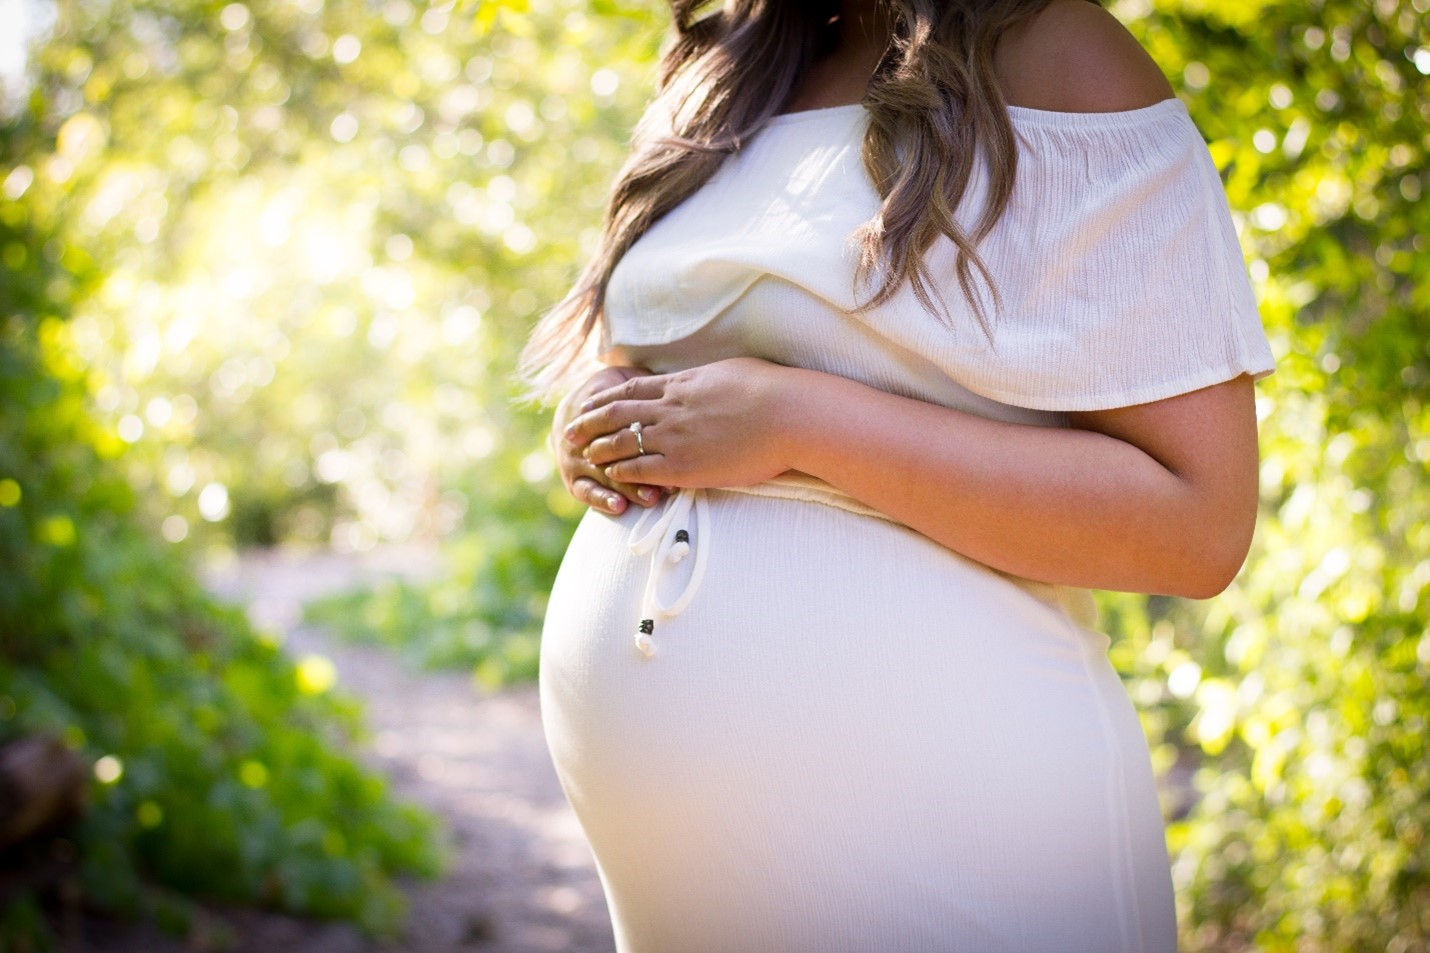 לפני שמגיעים למיון יולדות: איך תתכוננו לרגע הלידה?